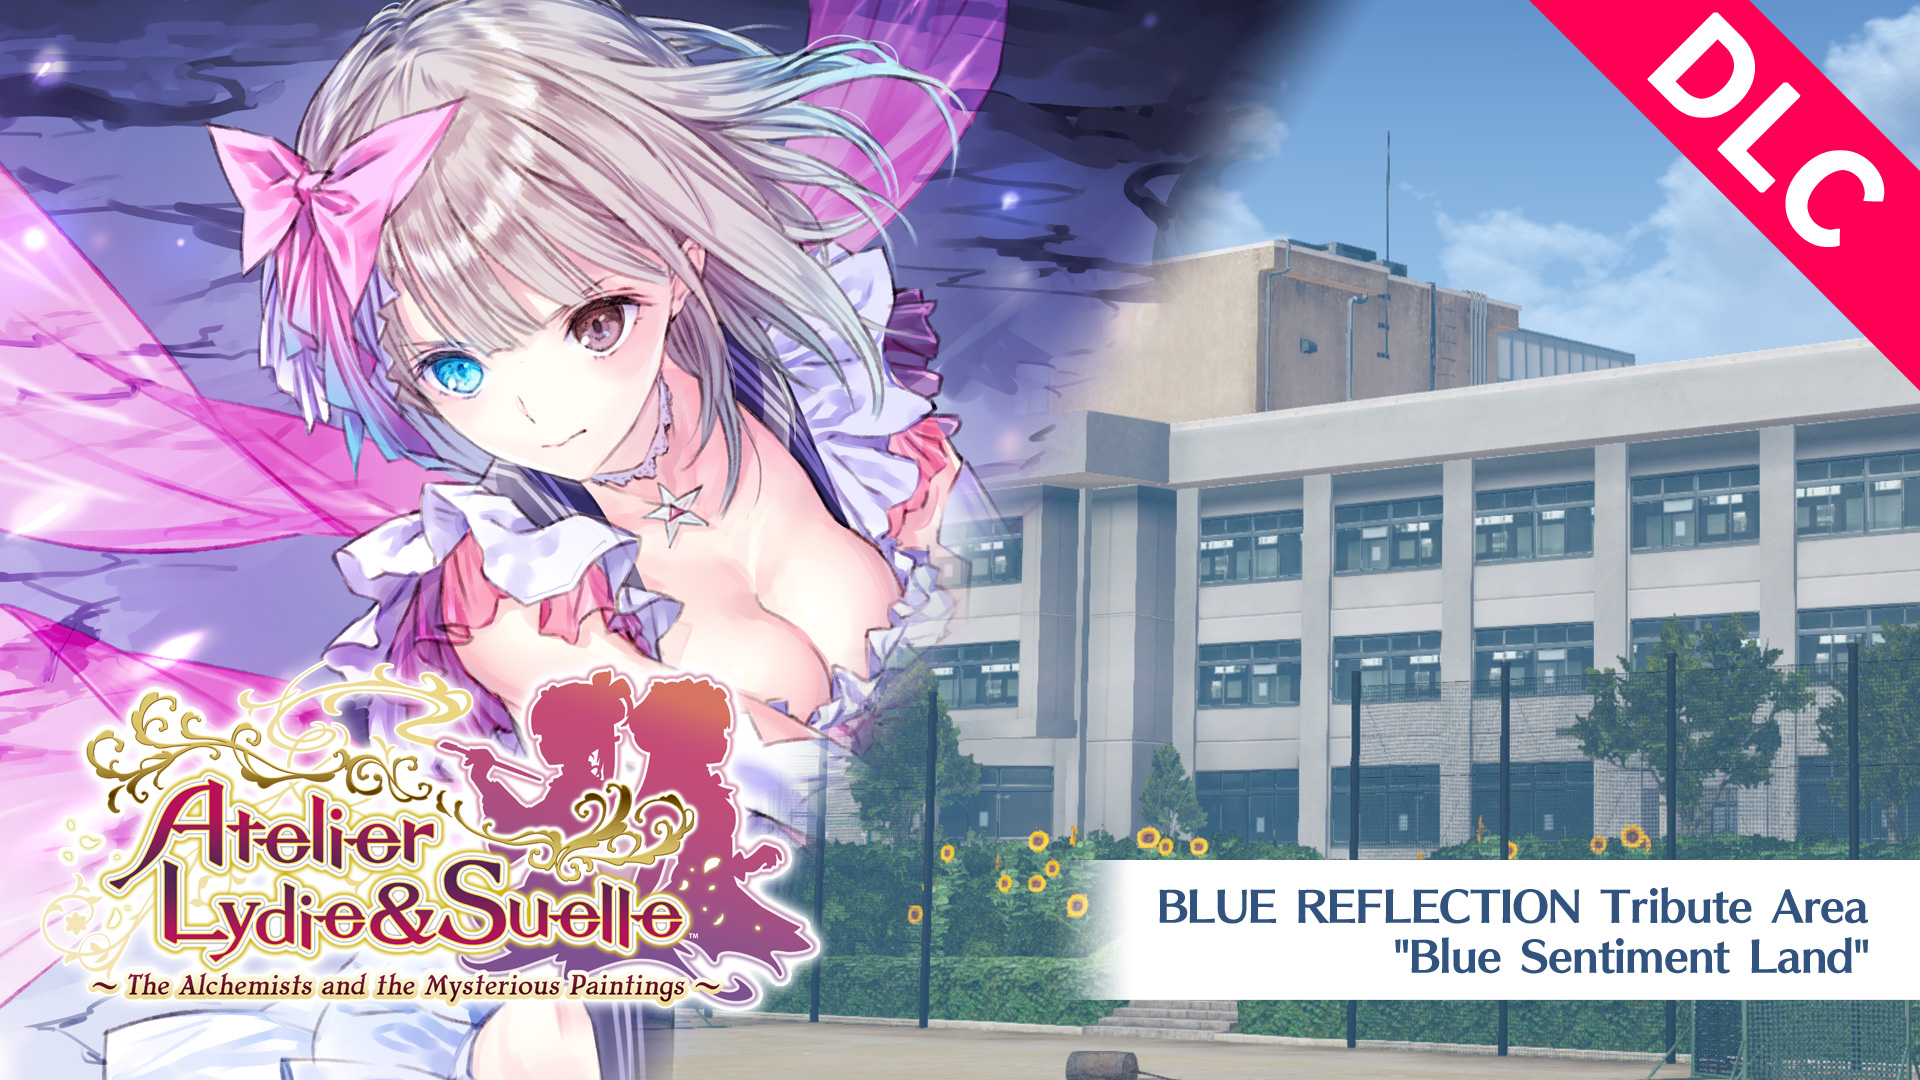 Atelier Lydie & Suelle: BLUE REFLECTION Tribute Area "Blue Sentiment Land"